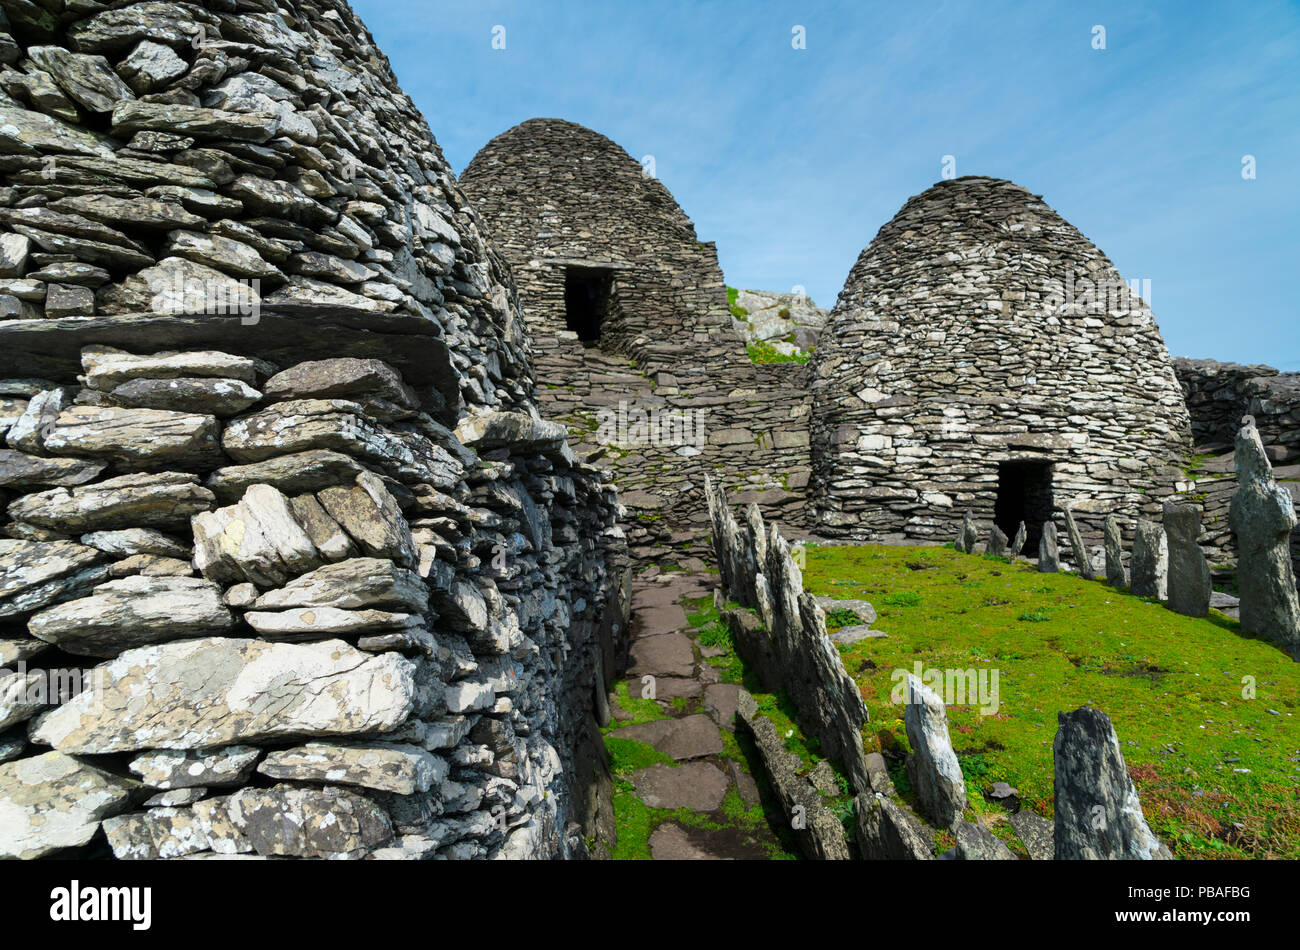 Monasterio de Skellig Michael, Sitio de Patrimonio Mundial de las Islas Skellig, Condado de Kerry, Irlanda, Europa. De septiembre de 2015. Foto de stock